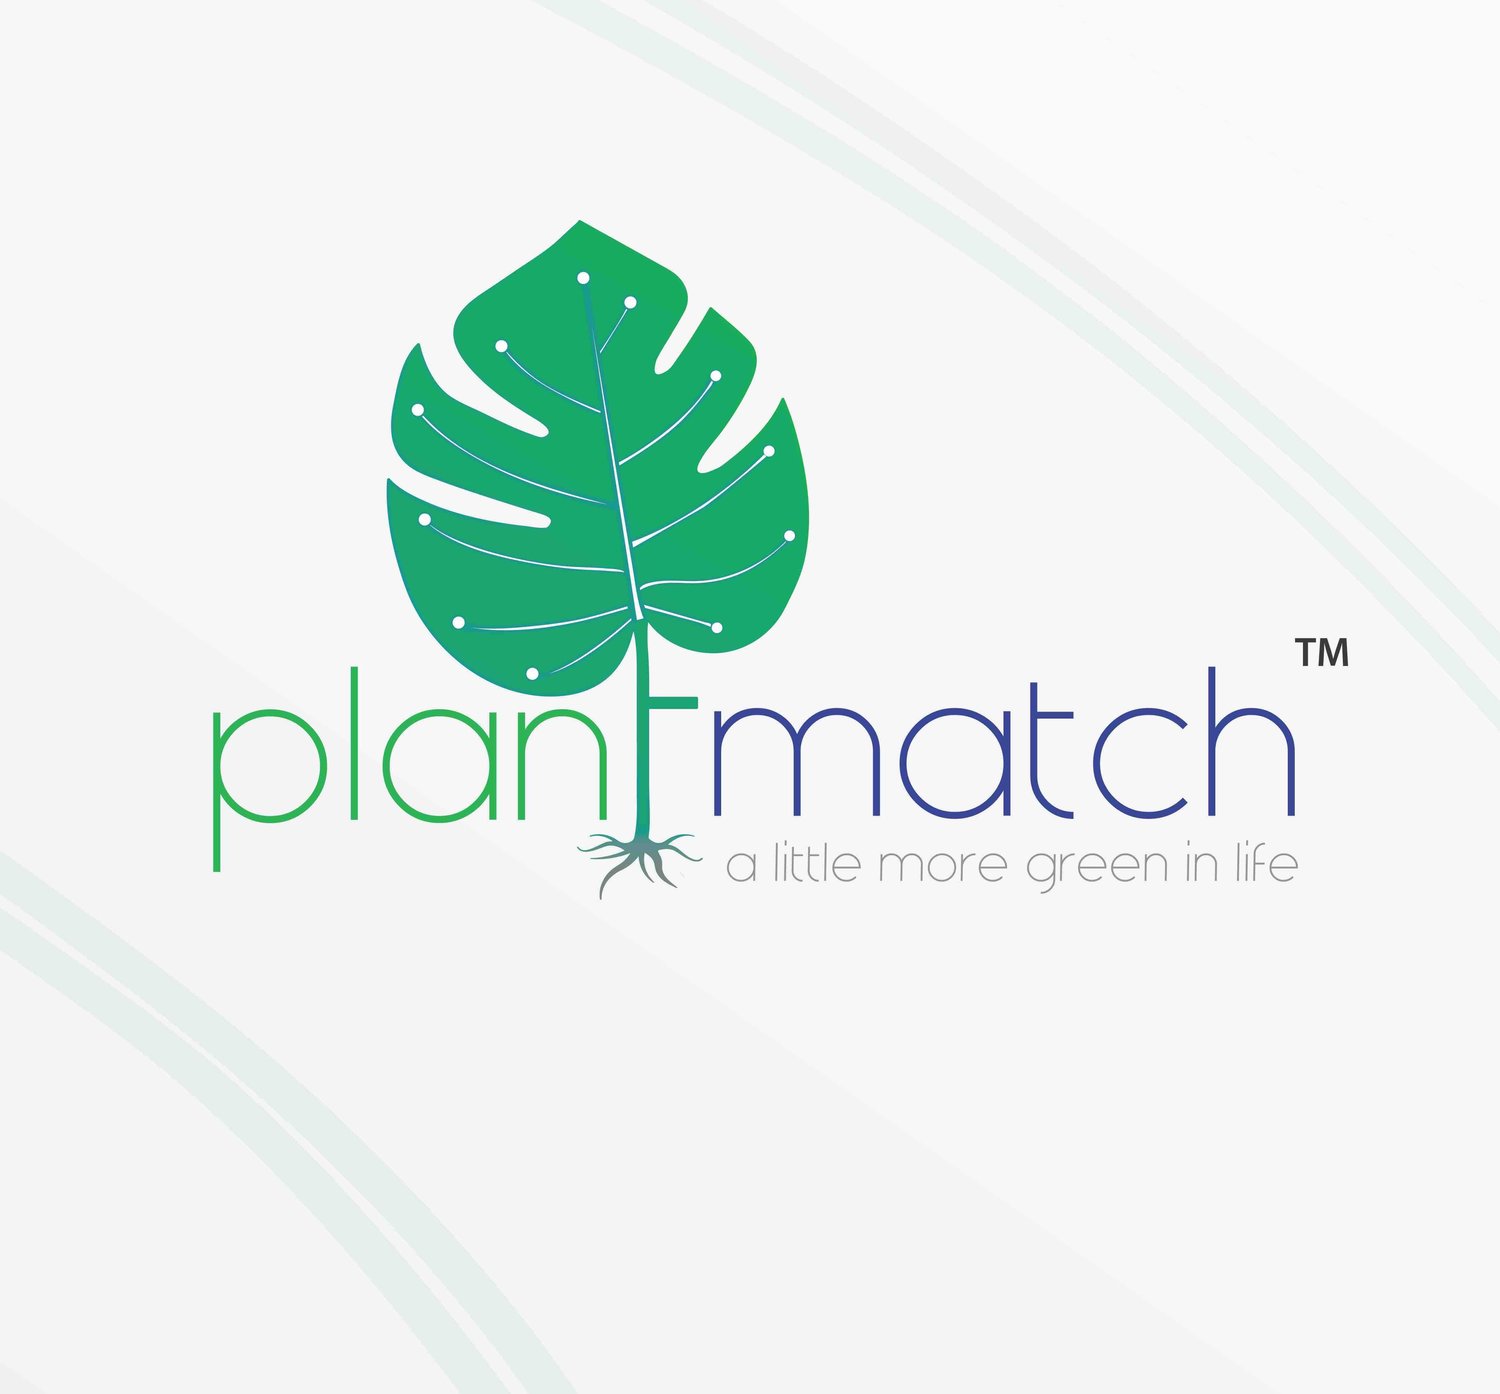 Plantmatch.co